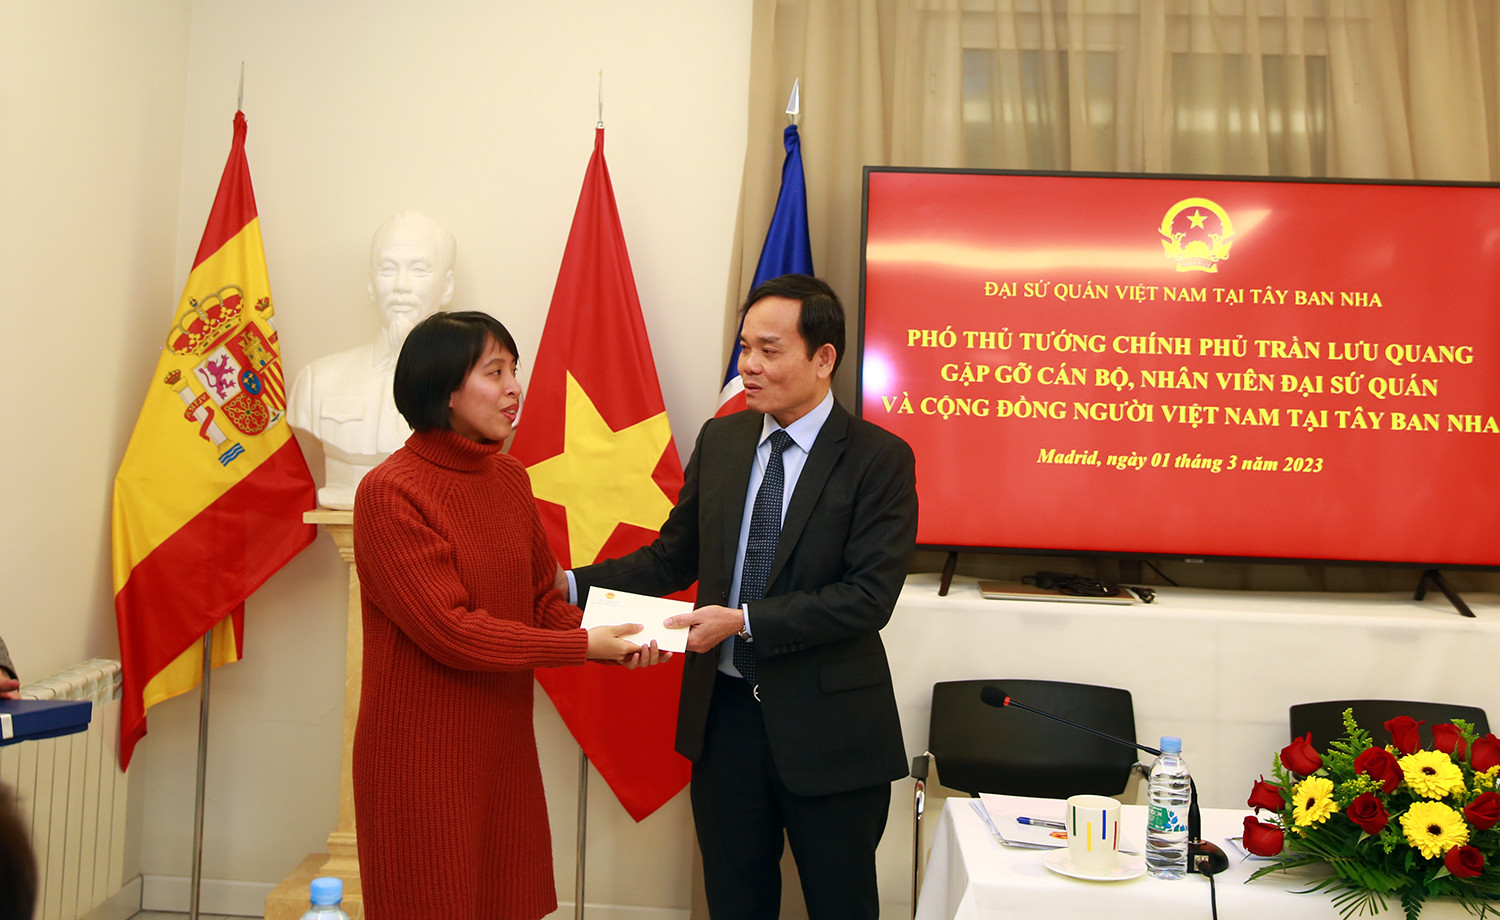 Phó Thủ tướng Trần Lưu Quang hội kiến Chủ tịch Hạ viện Tây Ban Nha, gặp gỡ thân mật kiều bào - Ảnh 6.